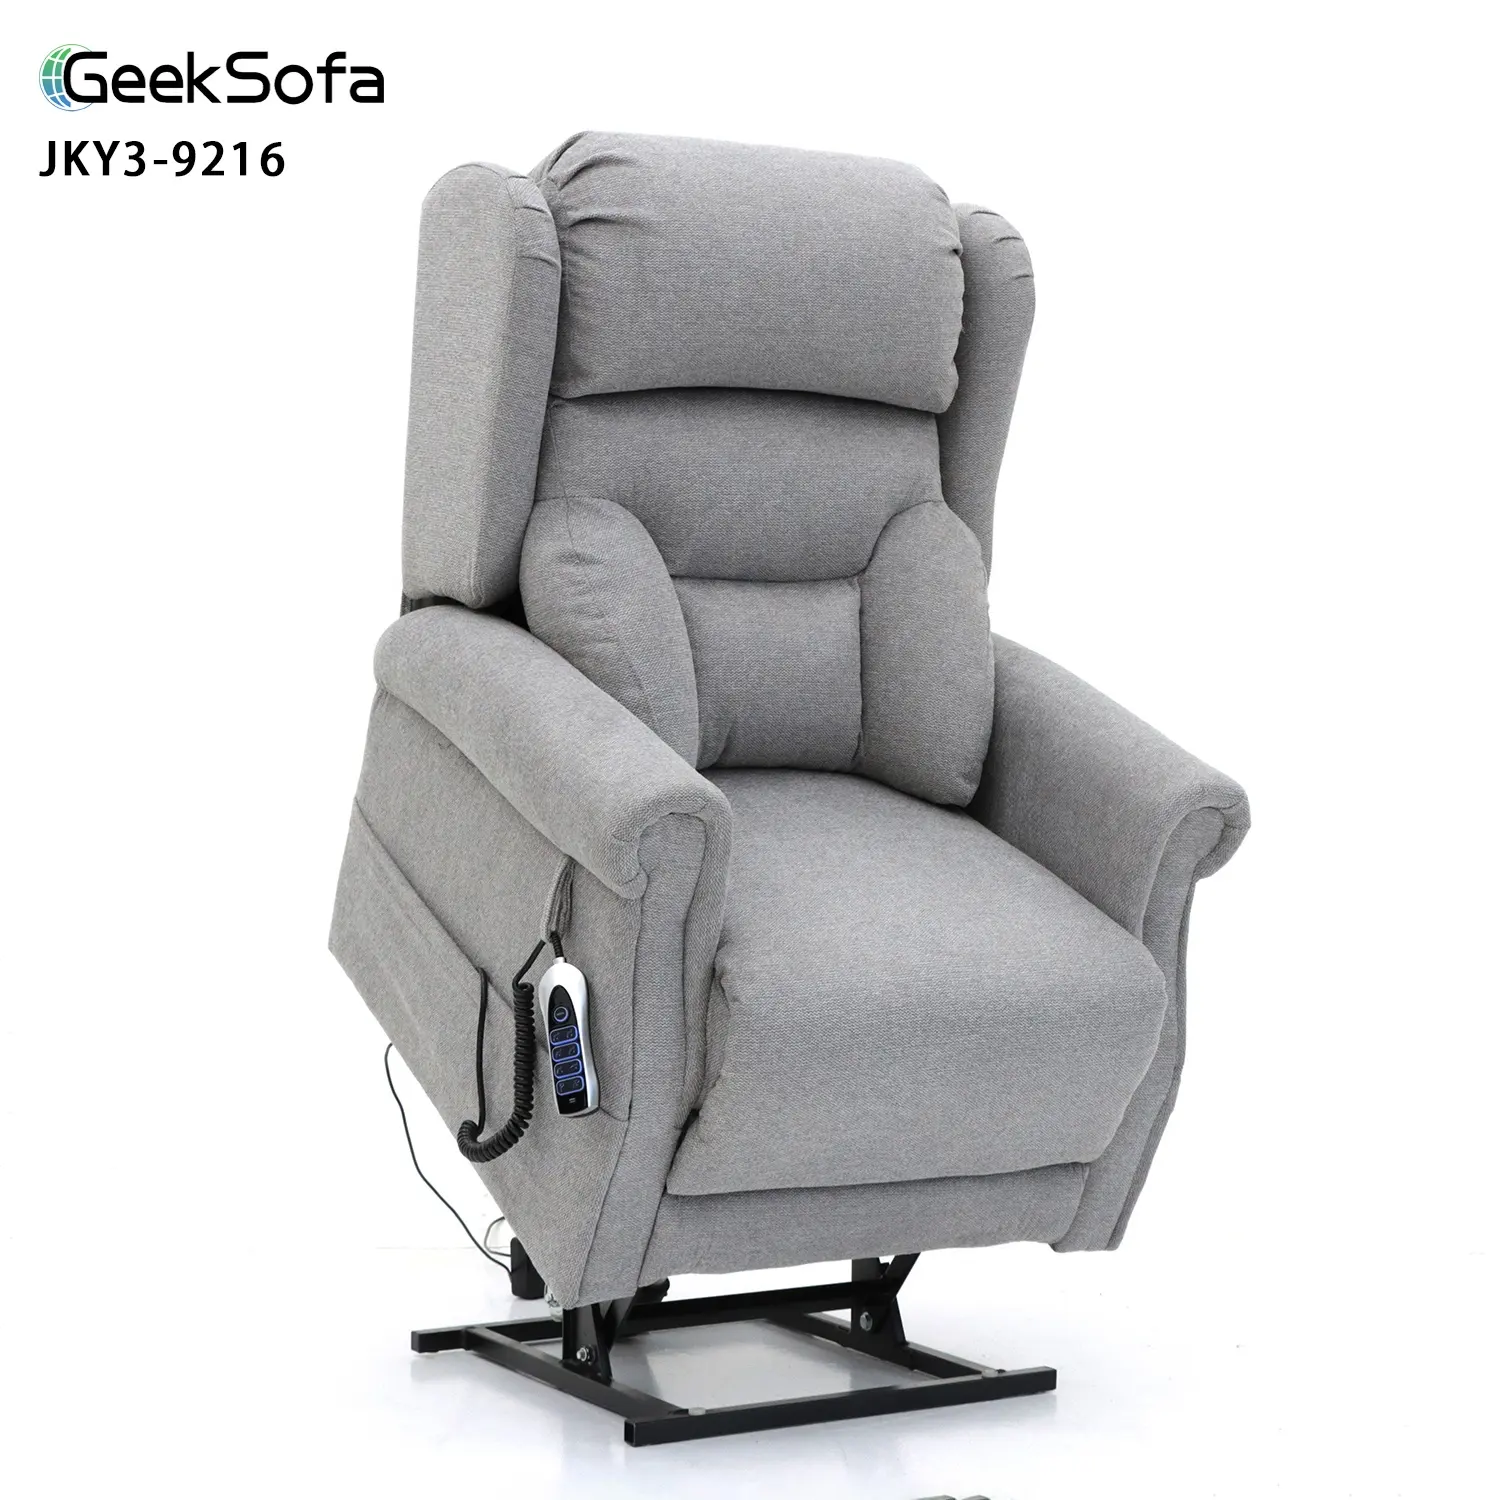 Geeksofa Quad Motor Power Electric Medical Lift Riser-Stuhl mit leistungsstarker Kopfstütze und Leistungs-Läderstütze für Ältere Menschen